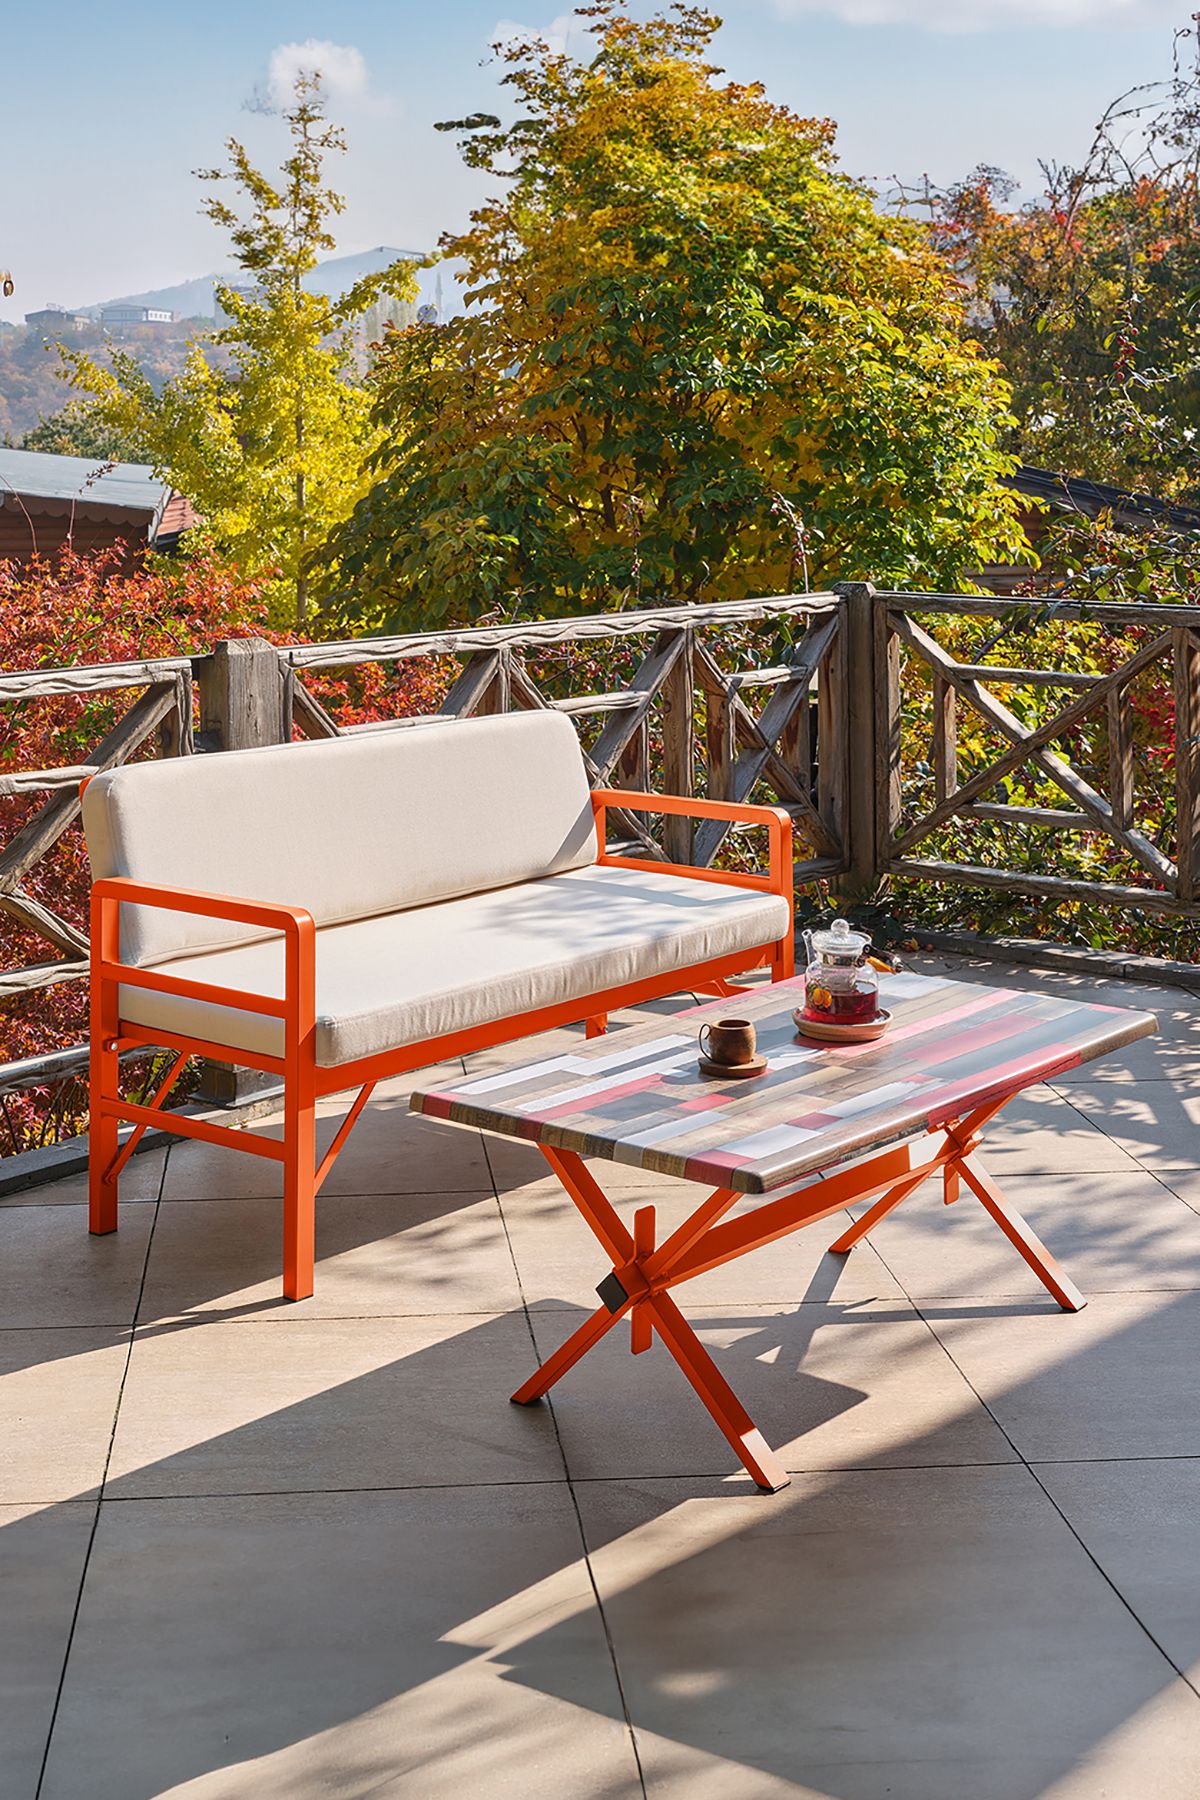 Unimet Pandora Katlanır Balkon&teras Bahçe Koltuk